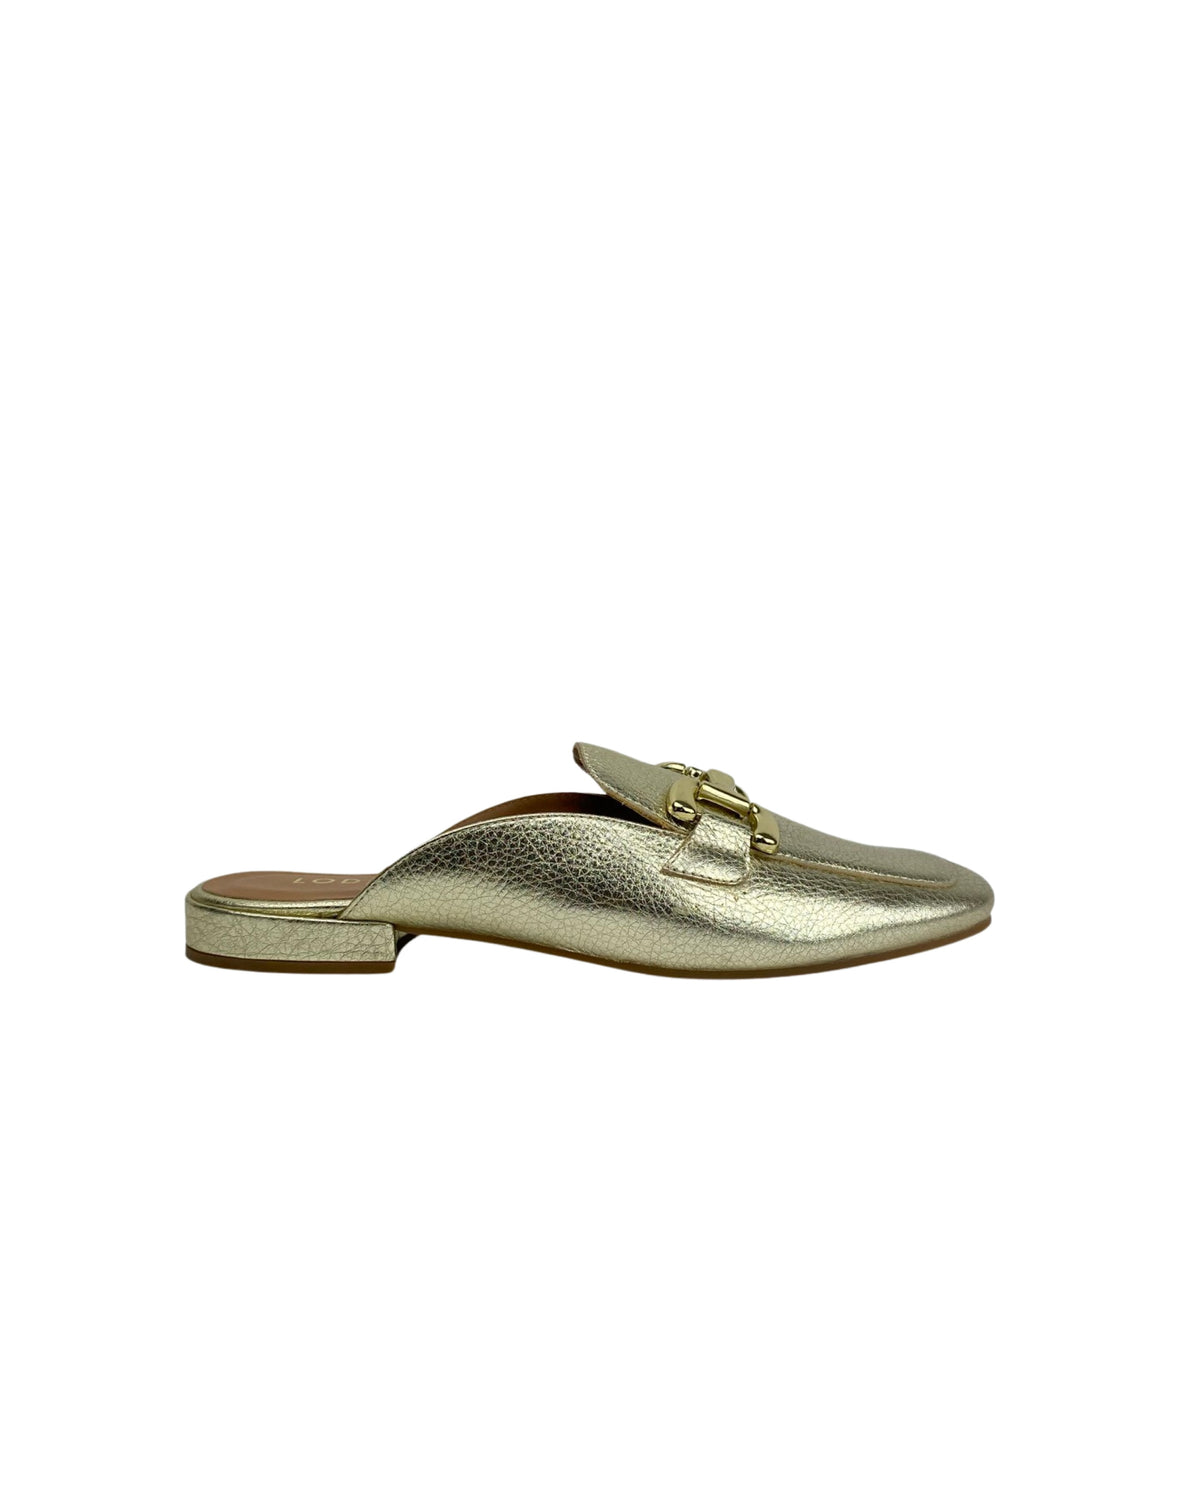 Lodi - ALA4356 Gold Leather Slide